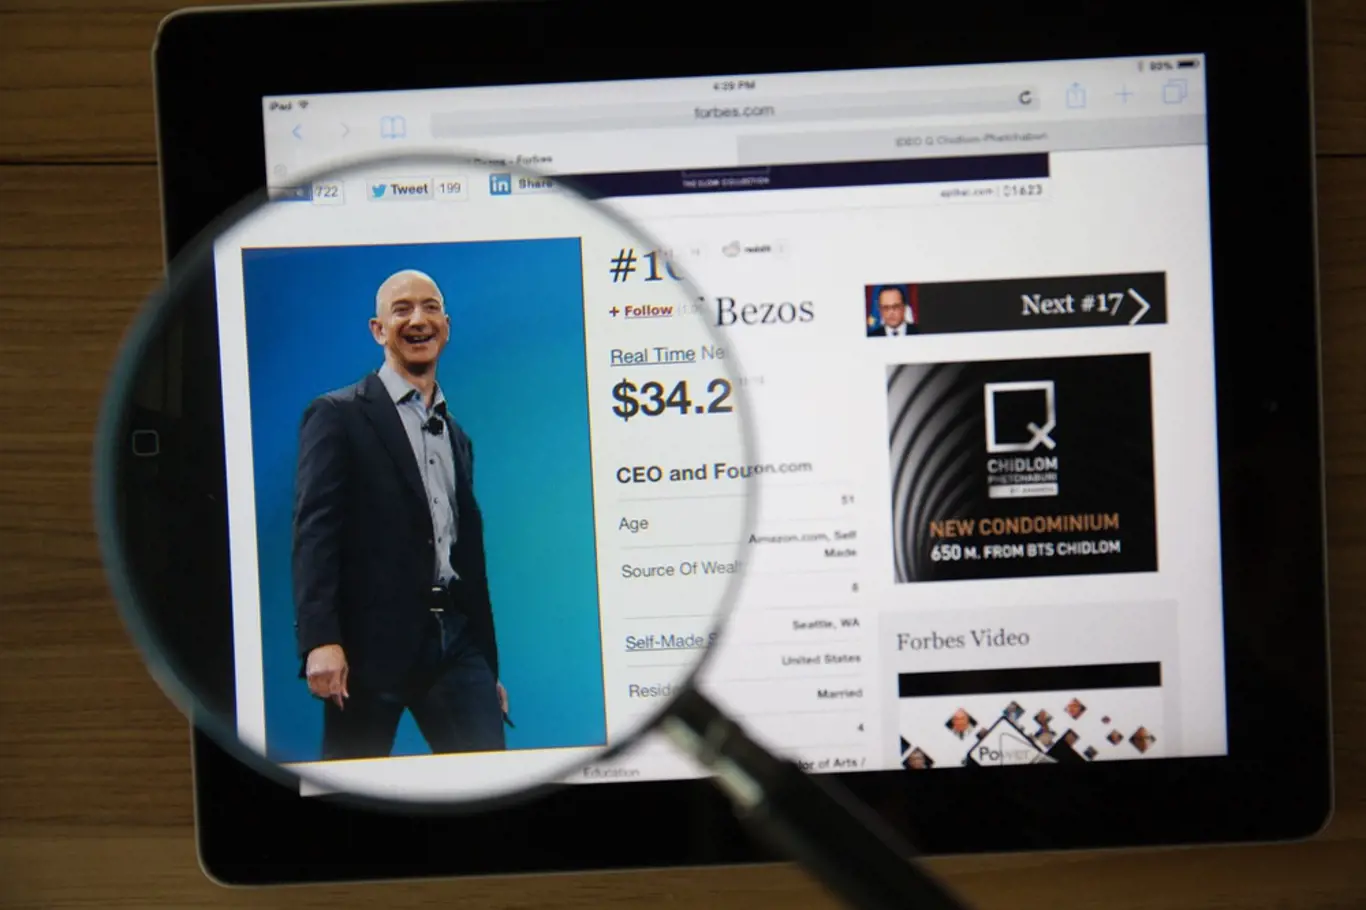 Zakladatel Amazon.com Jeff Bezos se stal třetím nejbohatším mužem světa